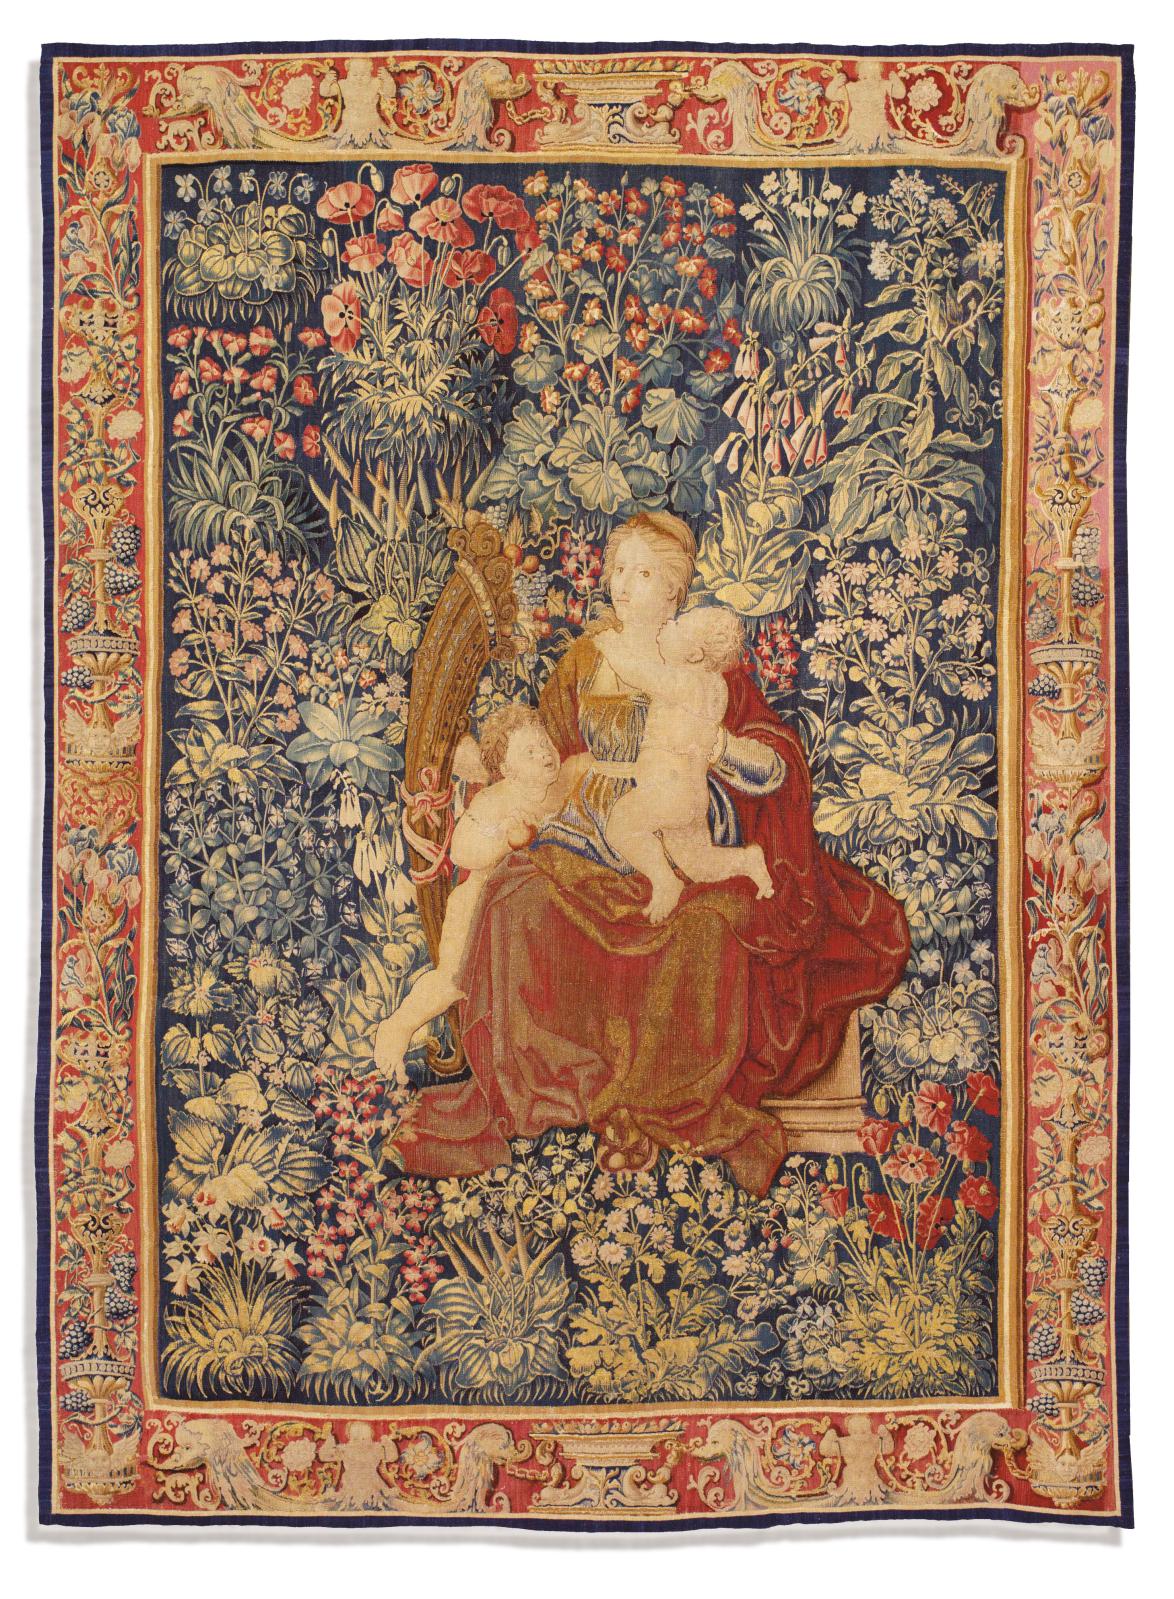 Les Chevalier, une dynastie de marchands de tapis et tapisserie qui tisse des histoires